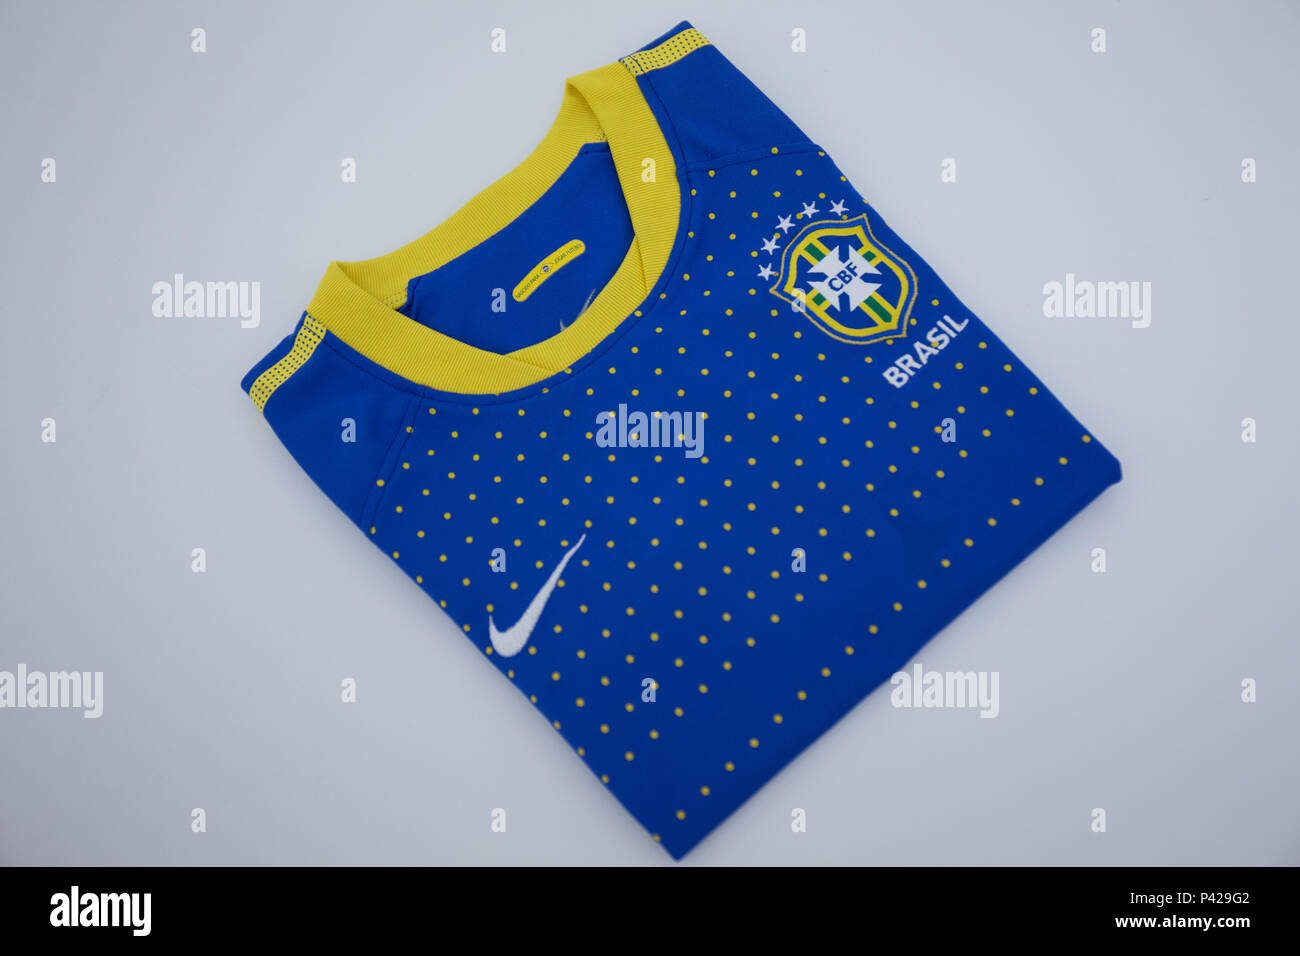 Camisa infantil da seleção brasileira Stock Photo - Alamy